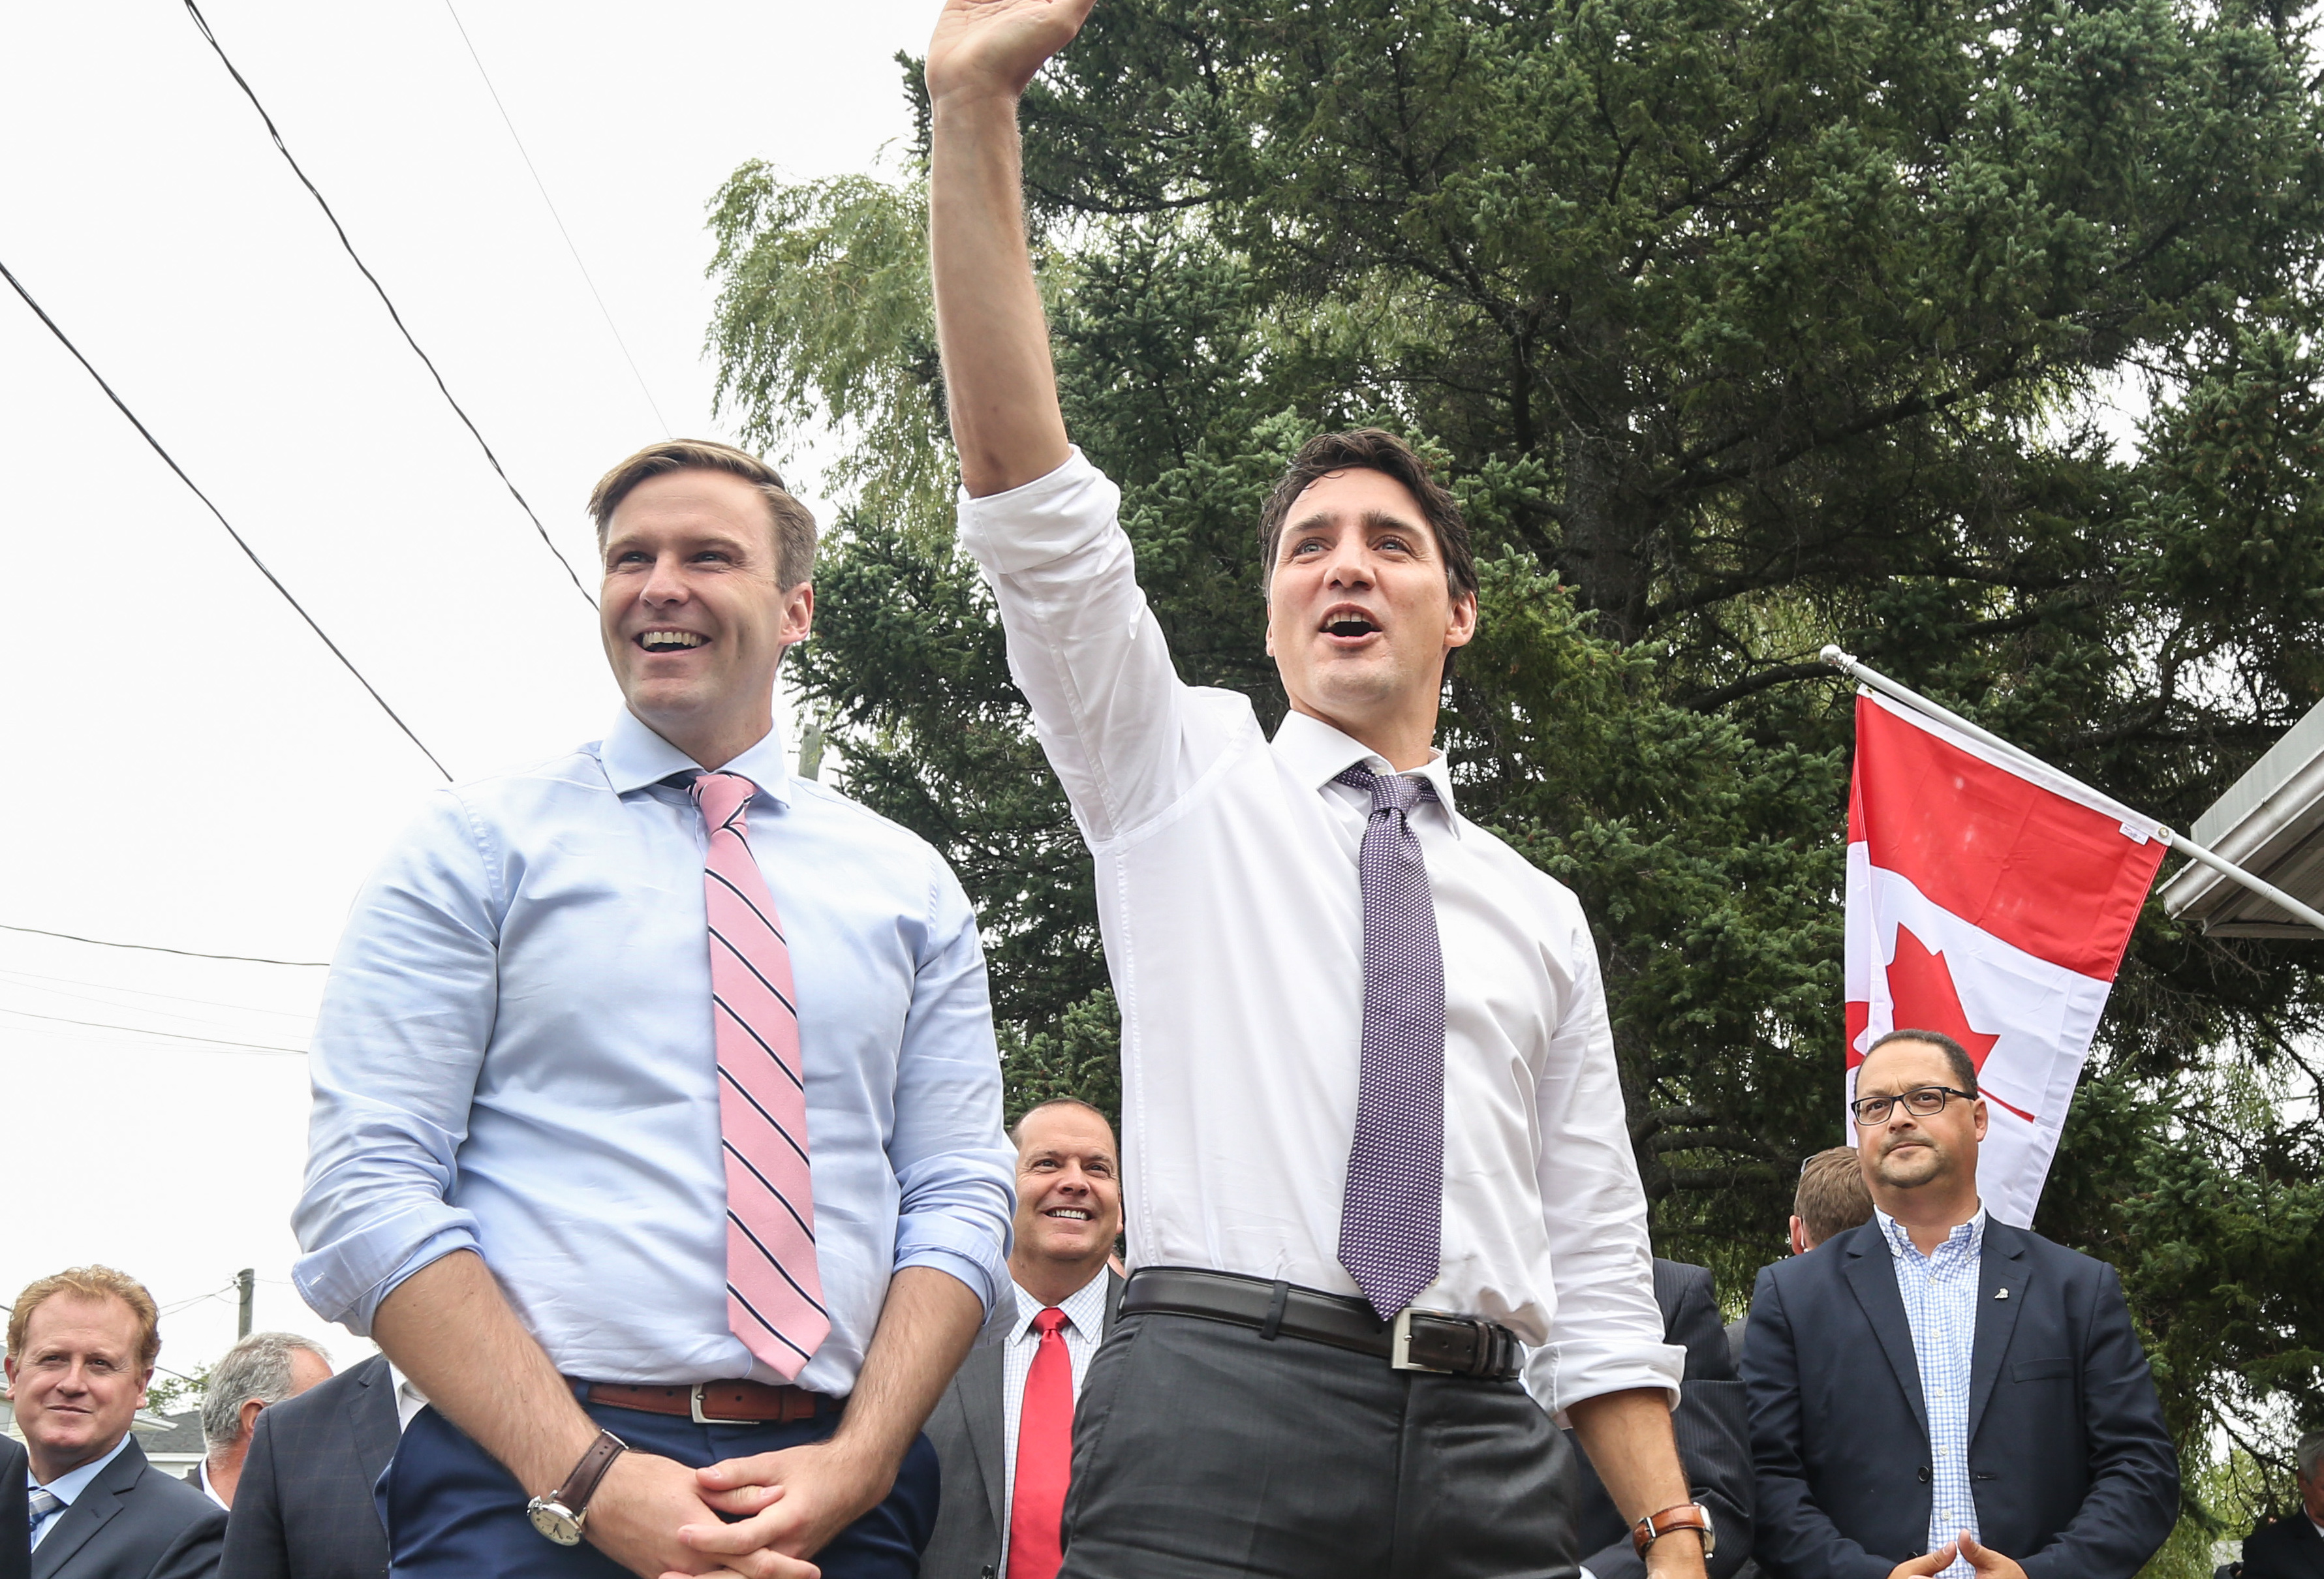 Brian Gallant and Justin Trudeau